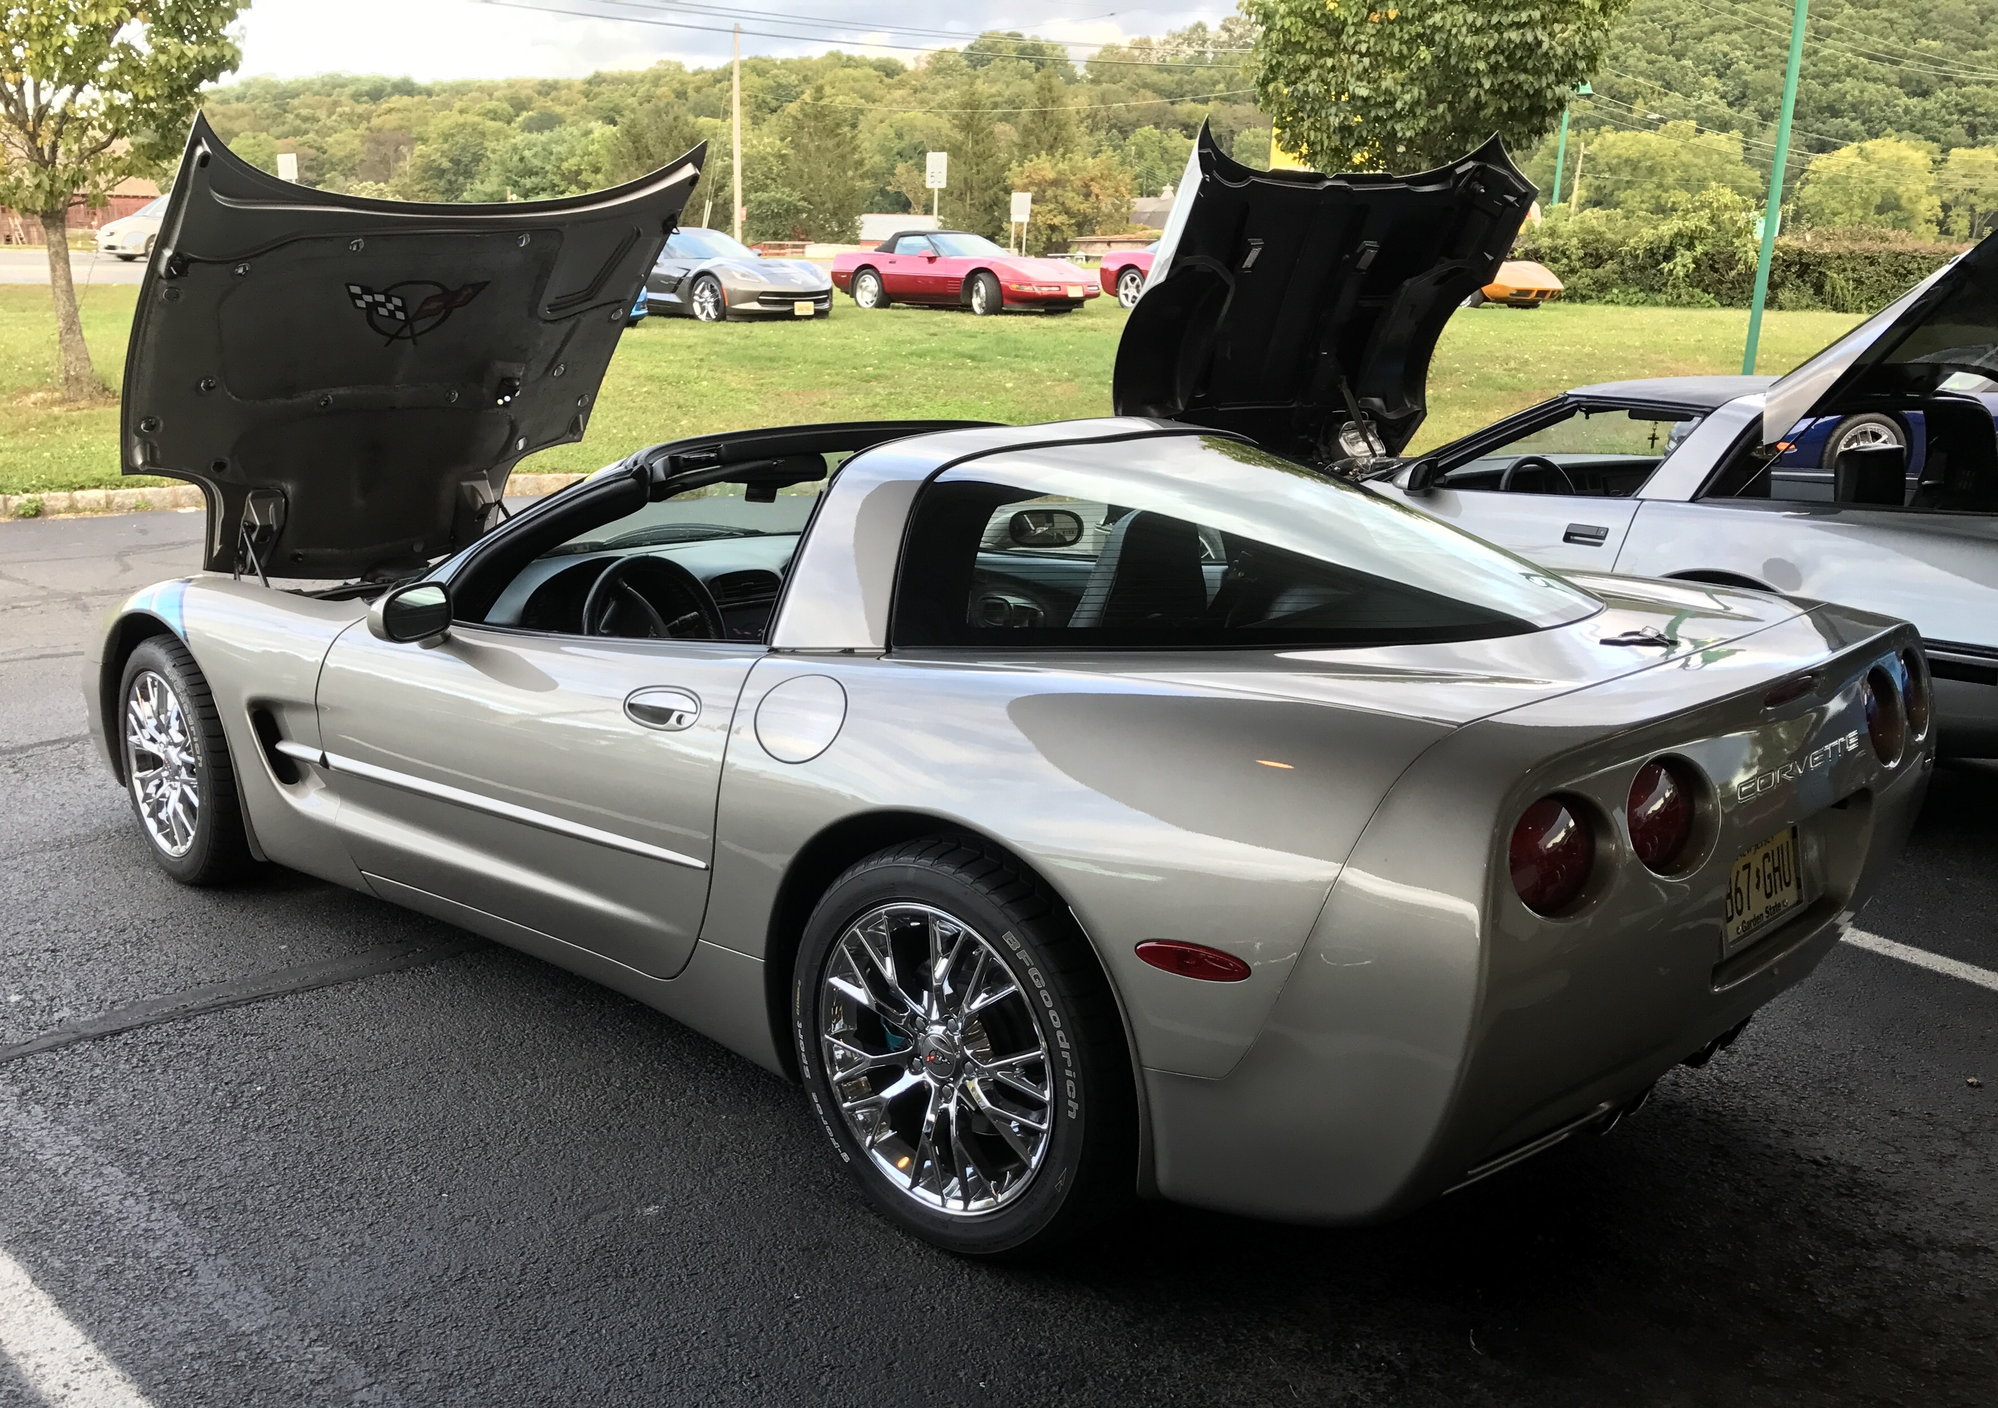 What Are Your Favorite C5 Corvette Wheel Options? - CorvetteForum